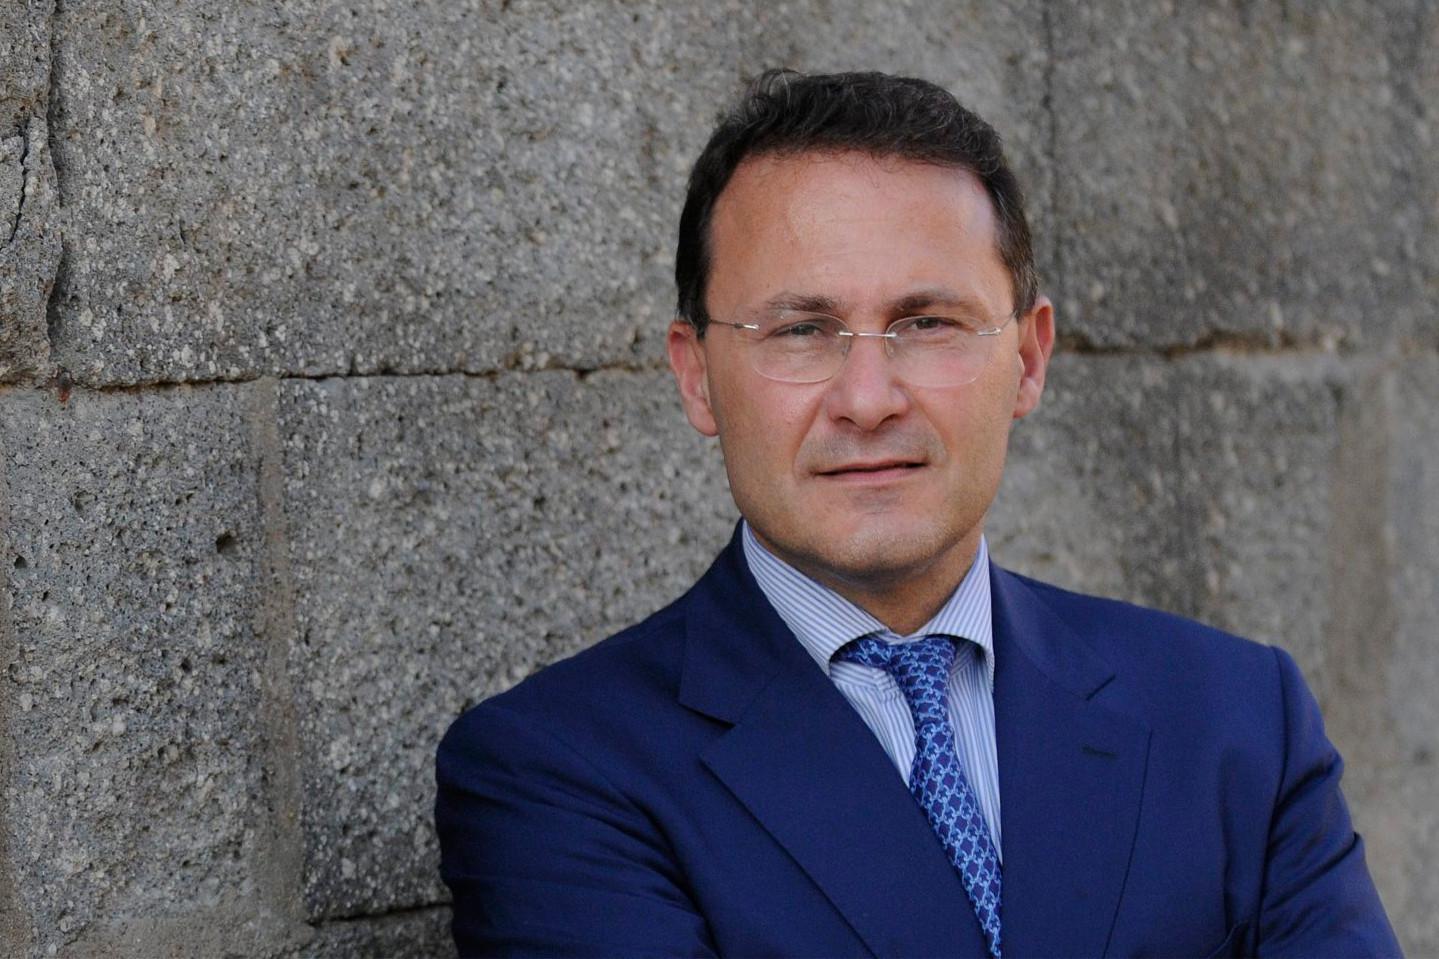 Elezioni a Salerno, Cirielli (FdI): “Lamorgese intervenga per verificare la validità del voto”